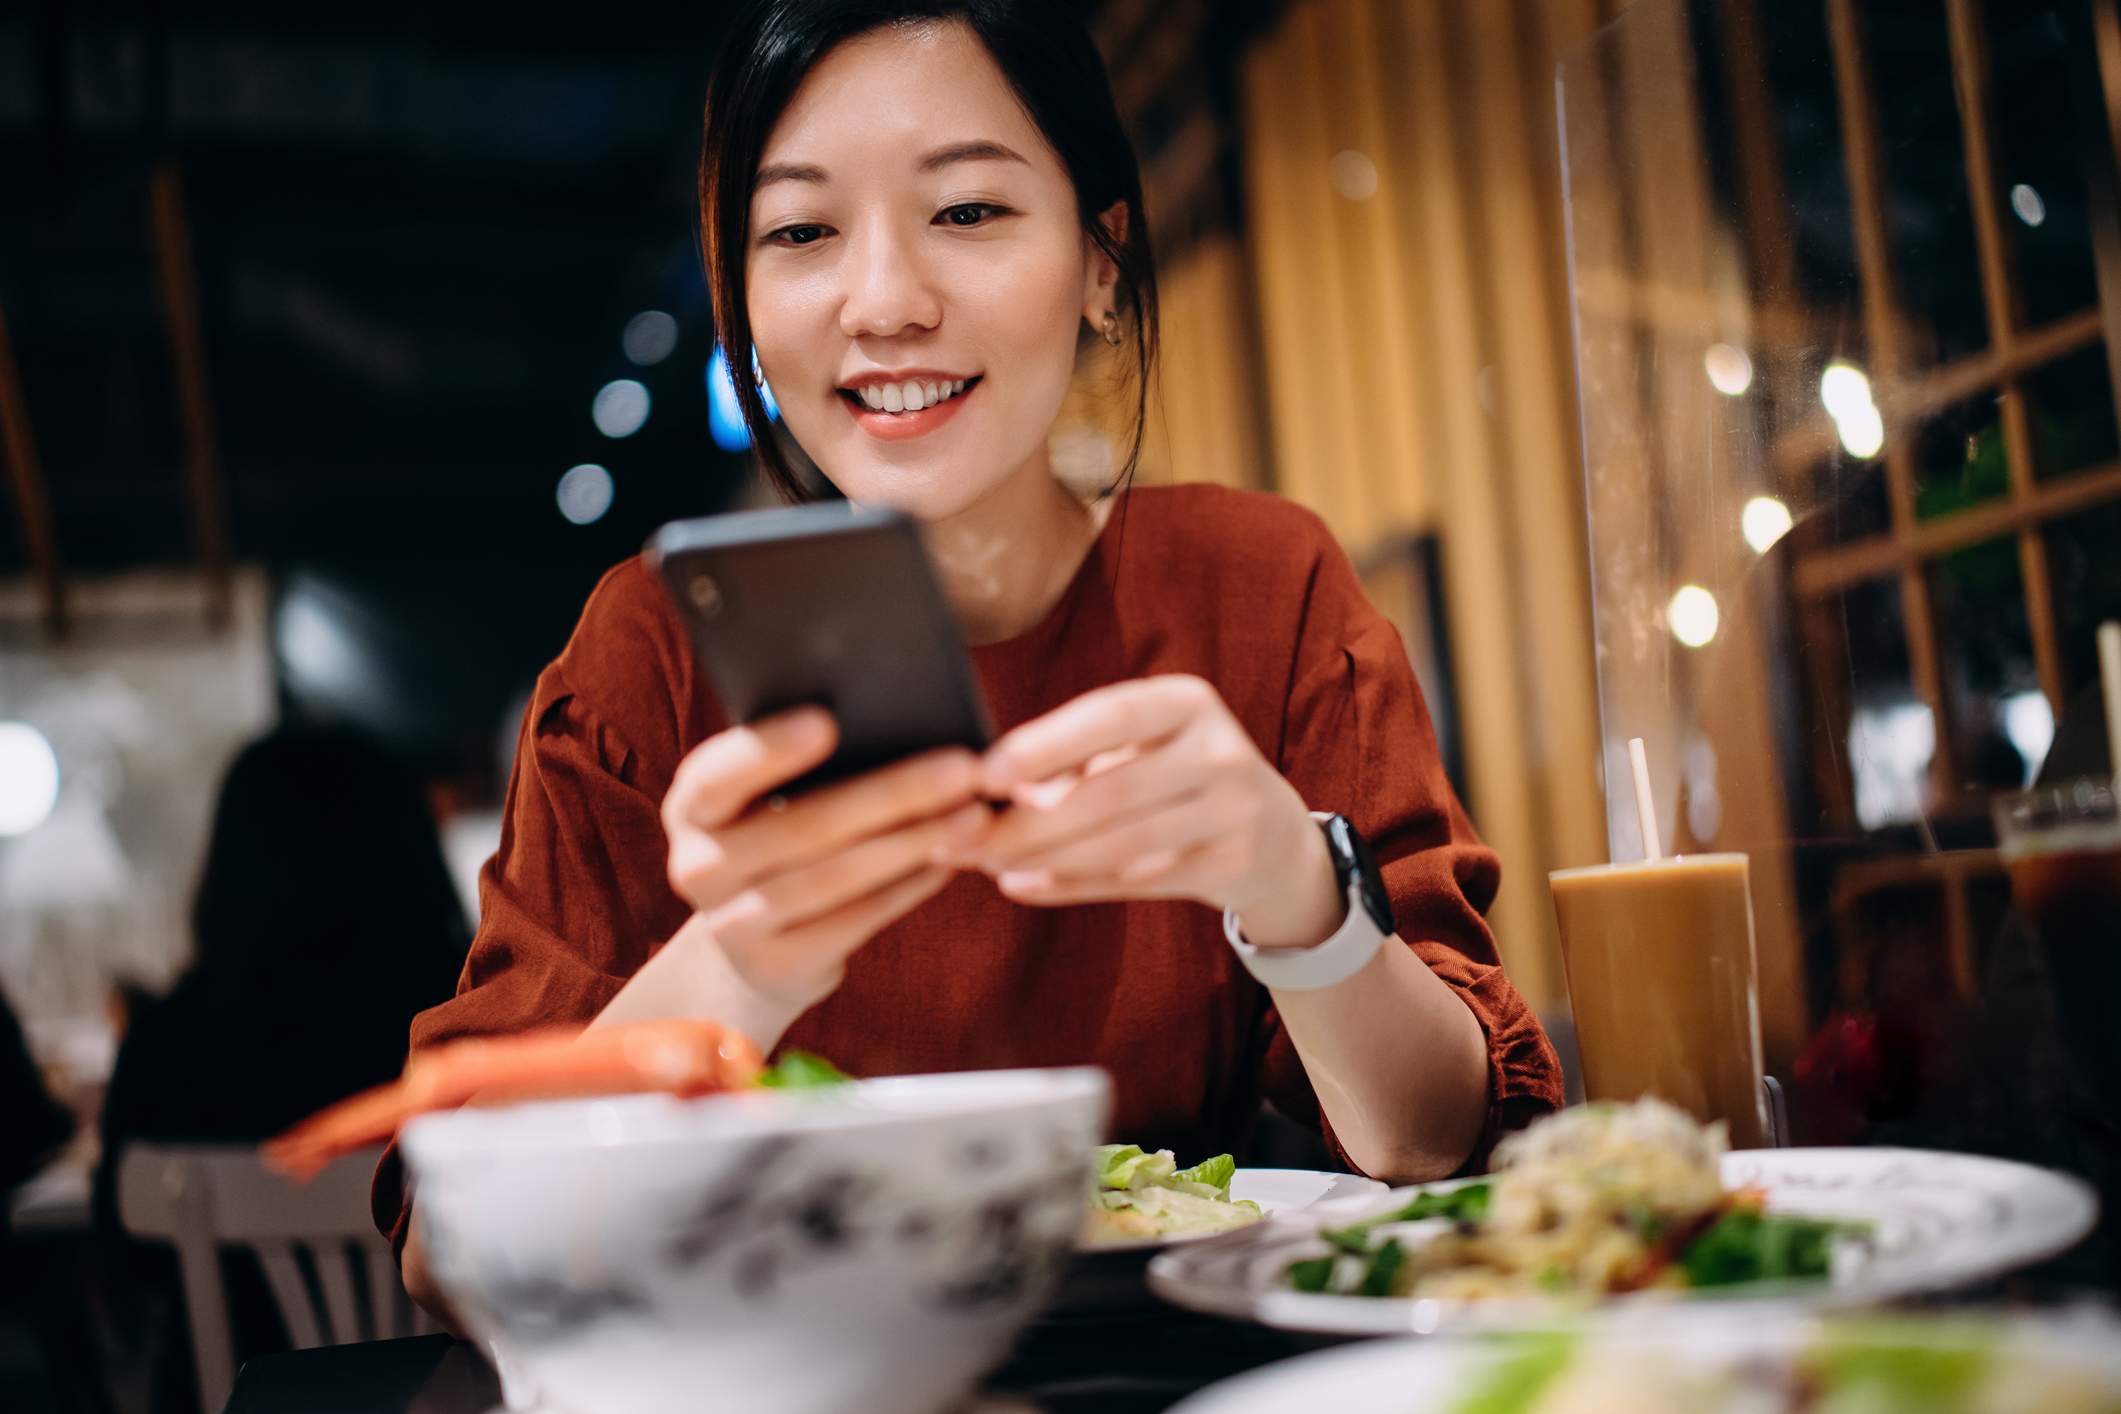 Das Bild zeigt eine Kundin in einem Restaurant, die ihr Telefon benutzt. Sie trägt ein rotes Hemd und eine Smartwatch und lächelt, während sie ihr Telefon hält.